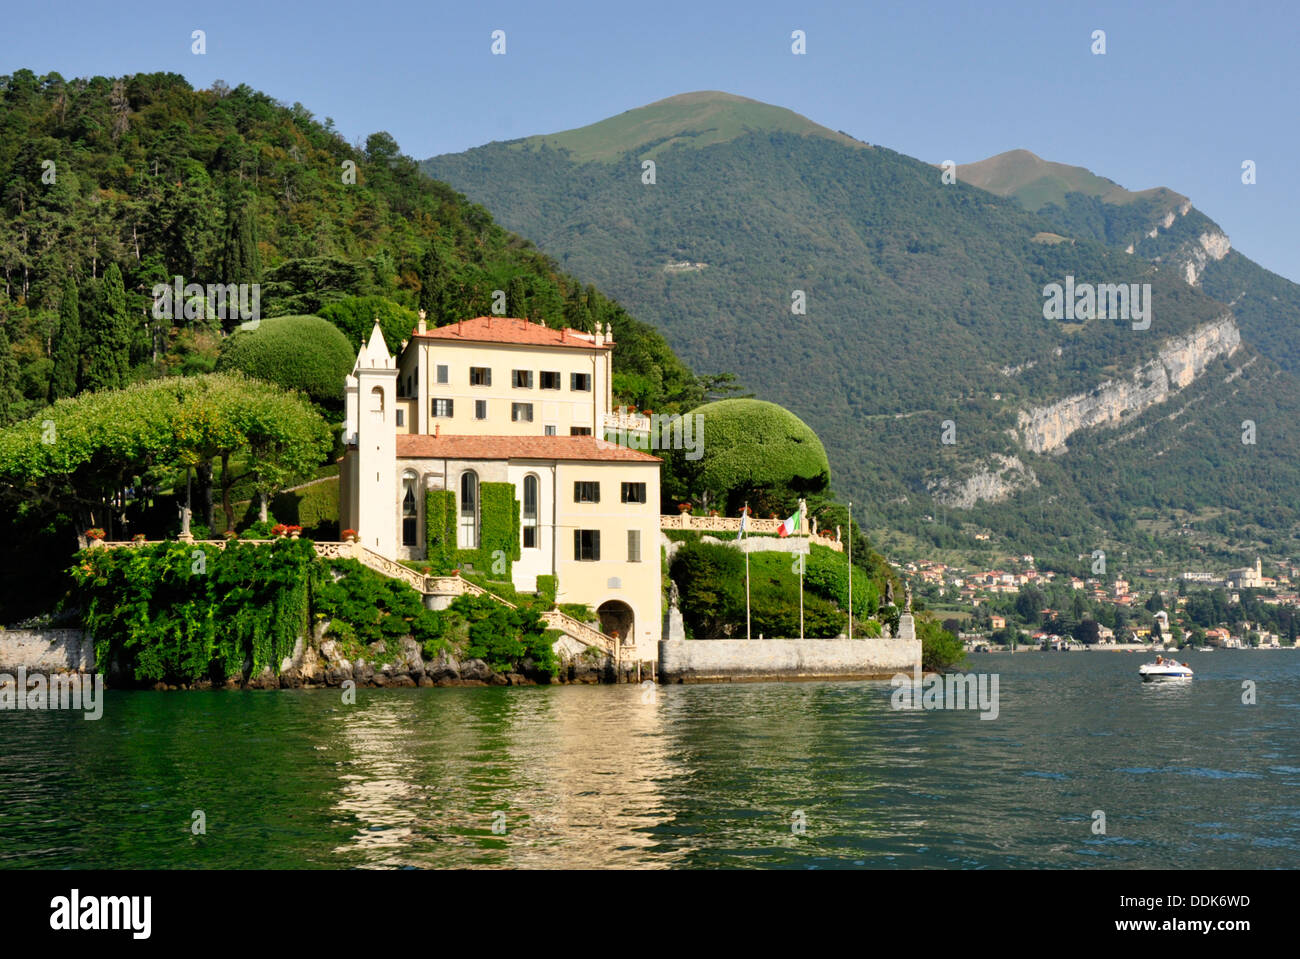 Italia - Lago di Como - Lenno - Villa del Balbianello - XVIII sec. - famosa per i suoi giardini - museo - posizione romantica - la luce del sole Foto Stock